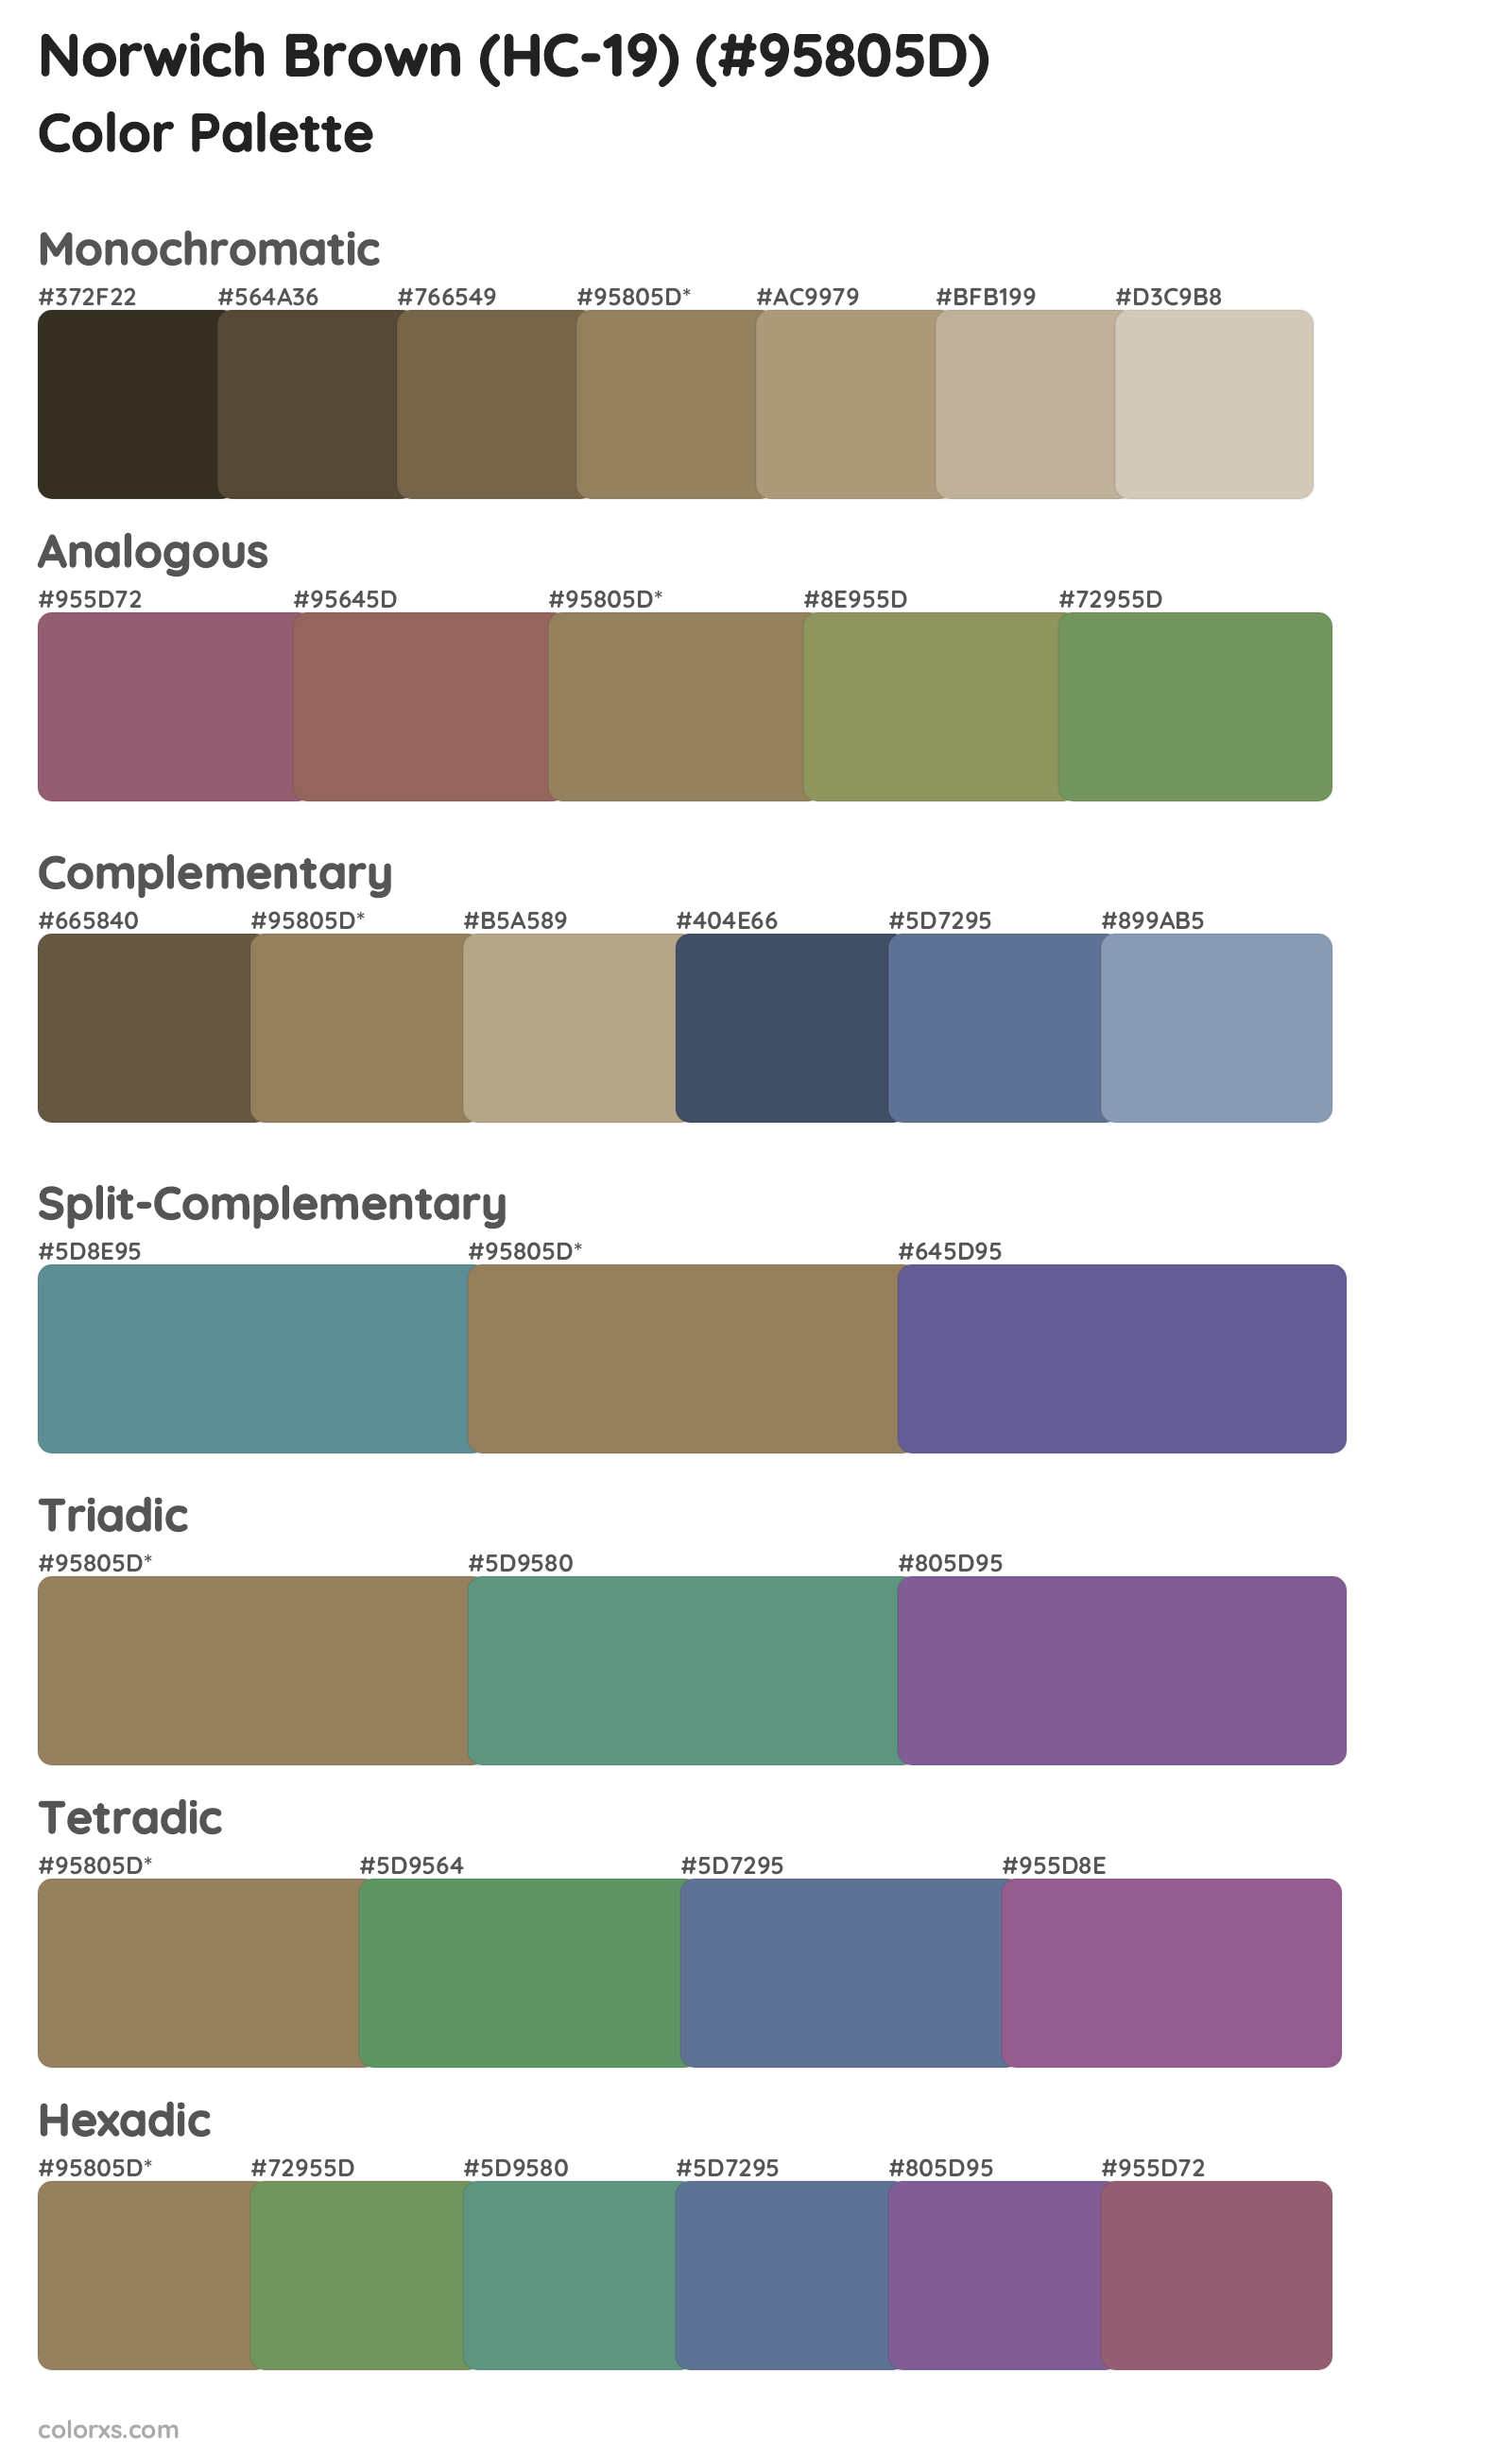 Norwich Brown (HC-19) Color Scheme Palettes